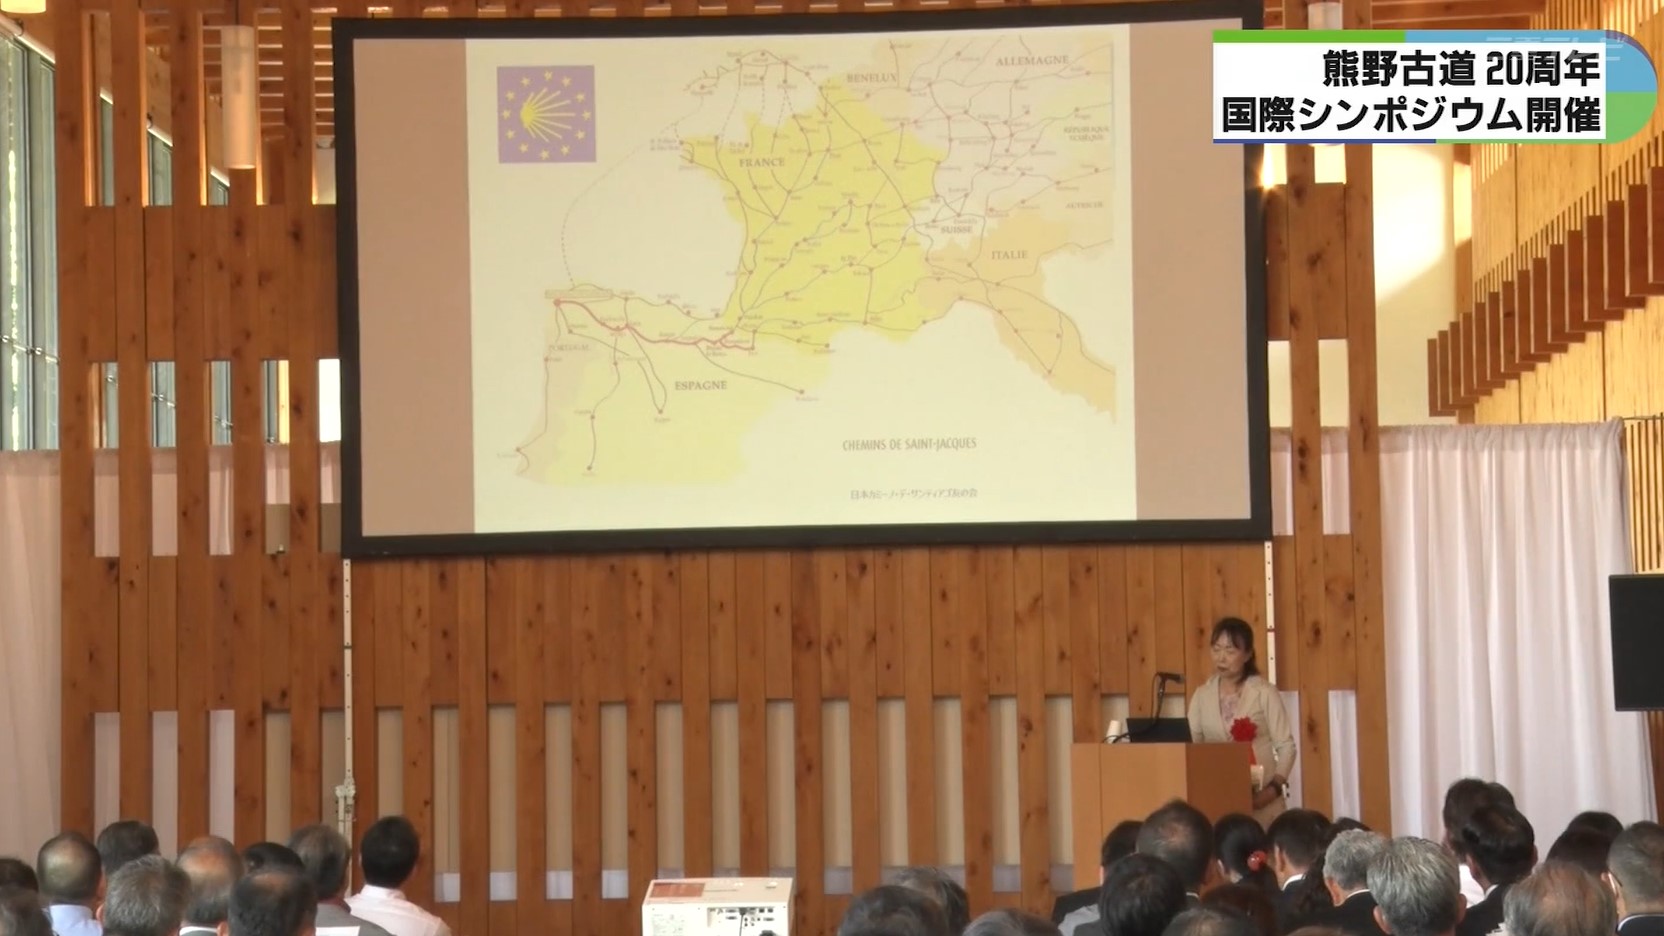 「巡礼道の持続的な価値を損なわないように」熊野古道・世界遺産登録20周年でシンポジウム